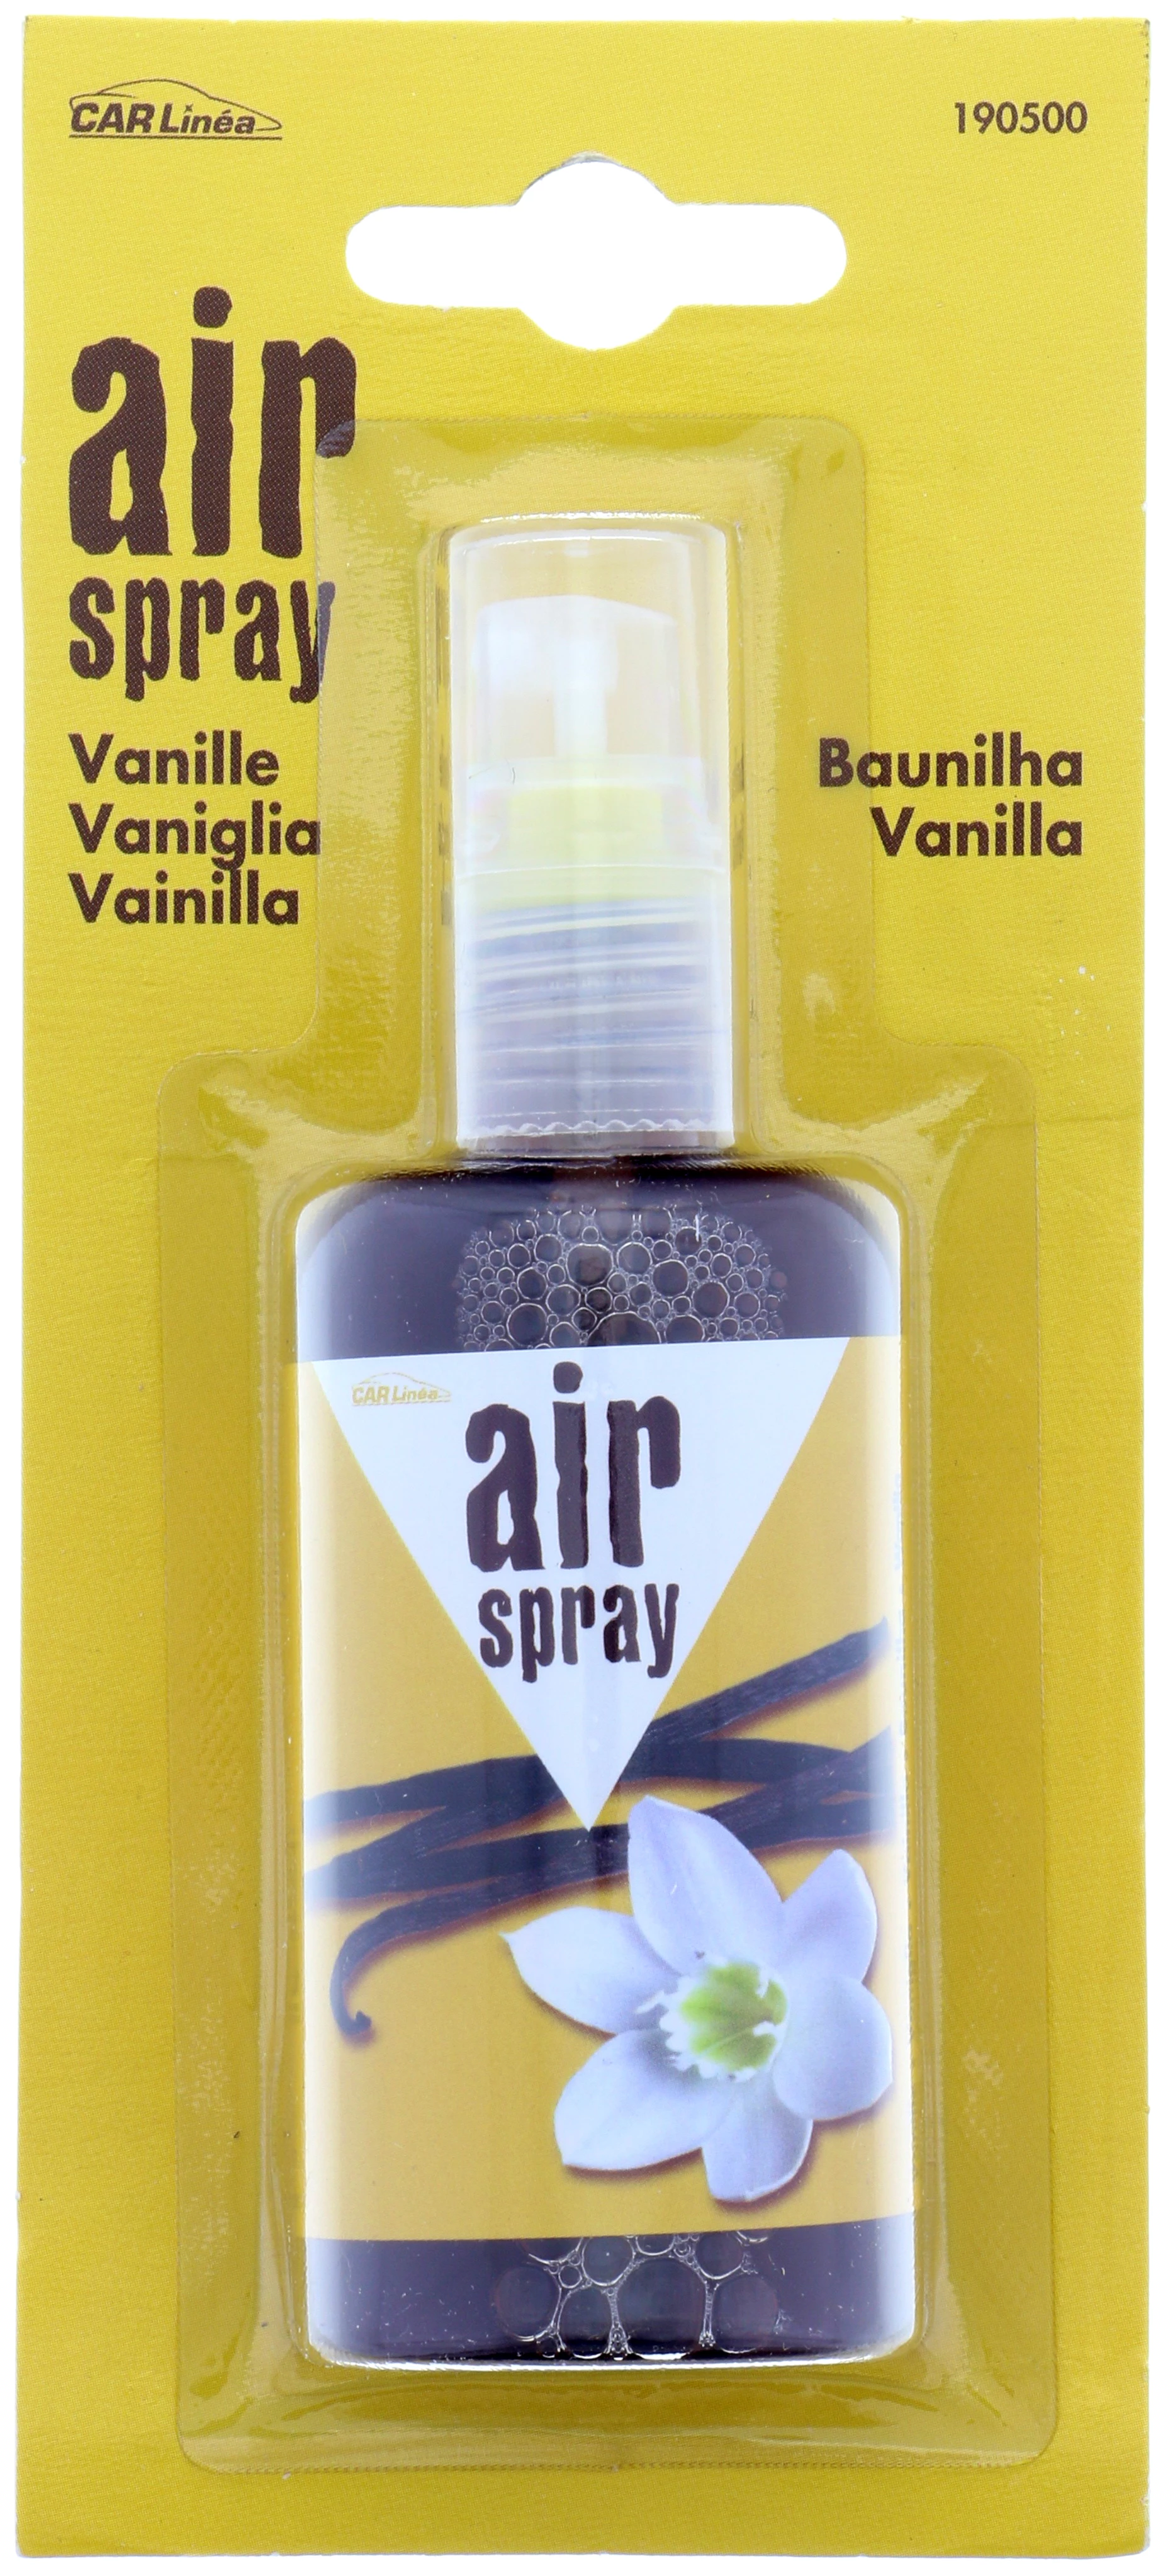 Air Spray Carlinea Vanille Pm